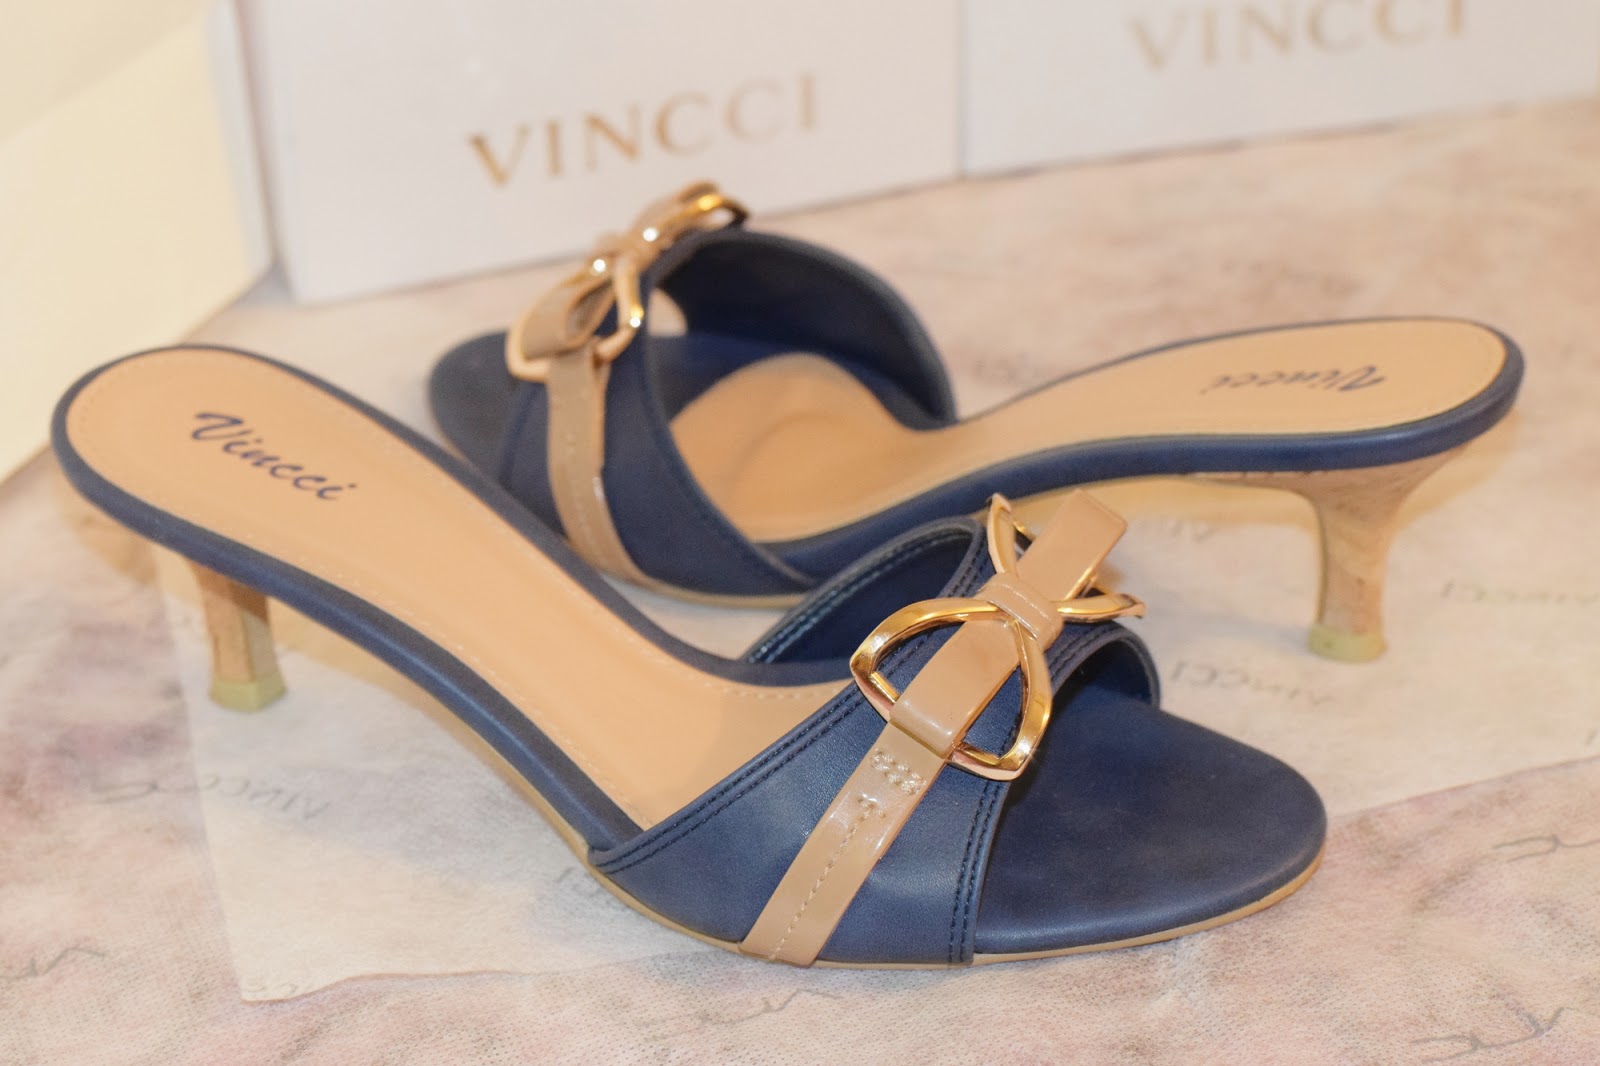 Vincci Shoes